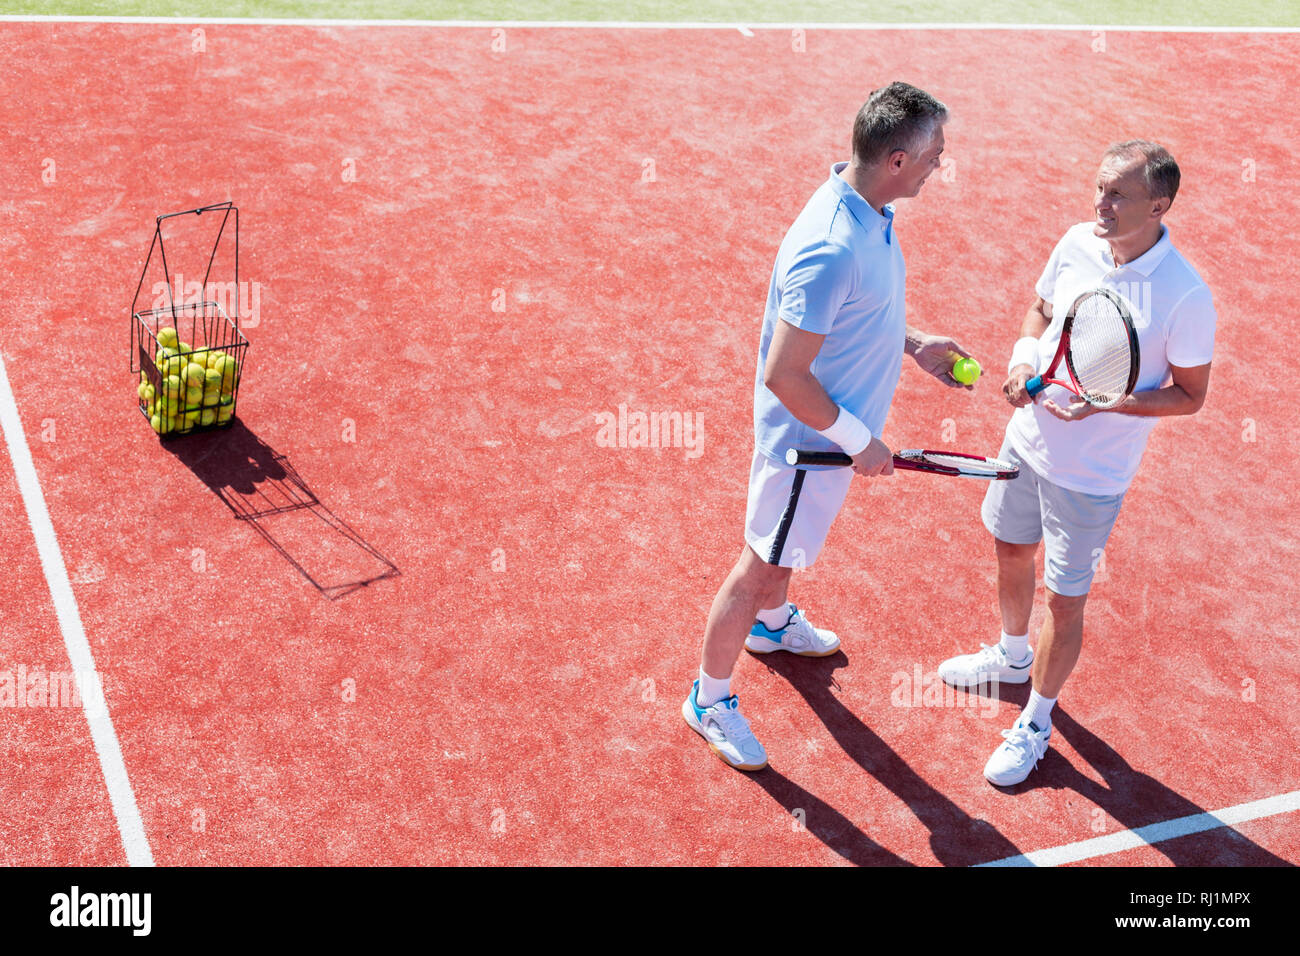 Toute la longueur d'hommes parler en se tenant sur le tennis au cours de match Banque D'Images